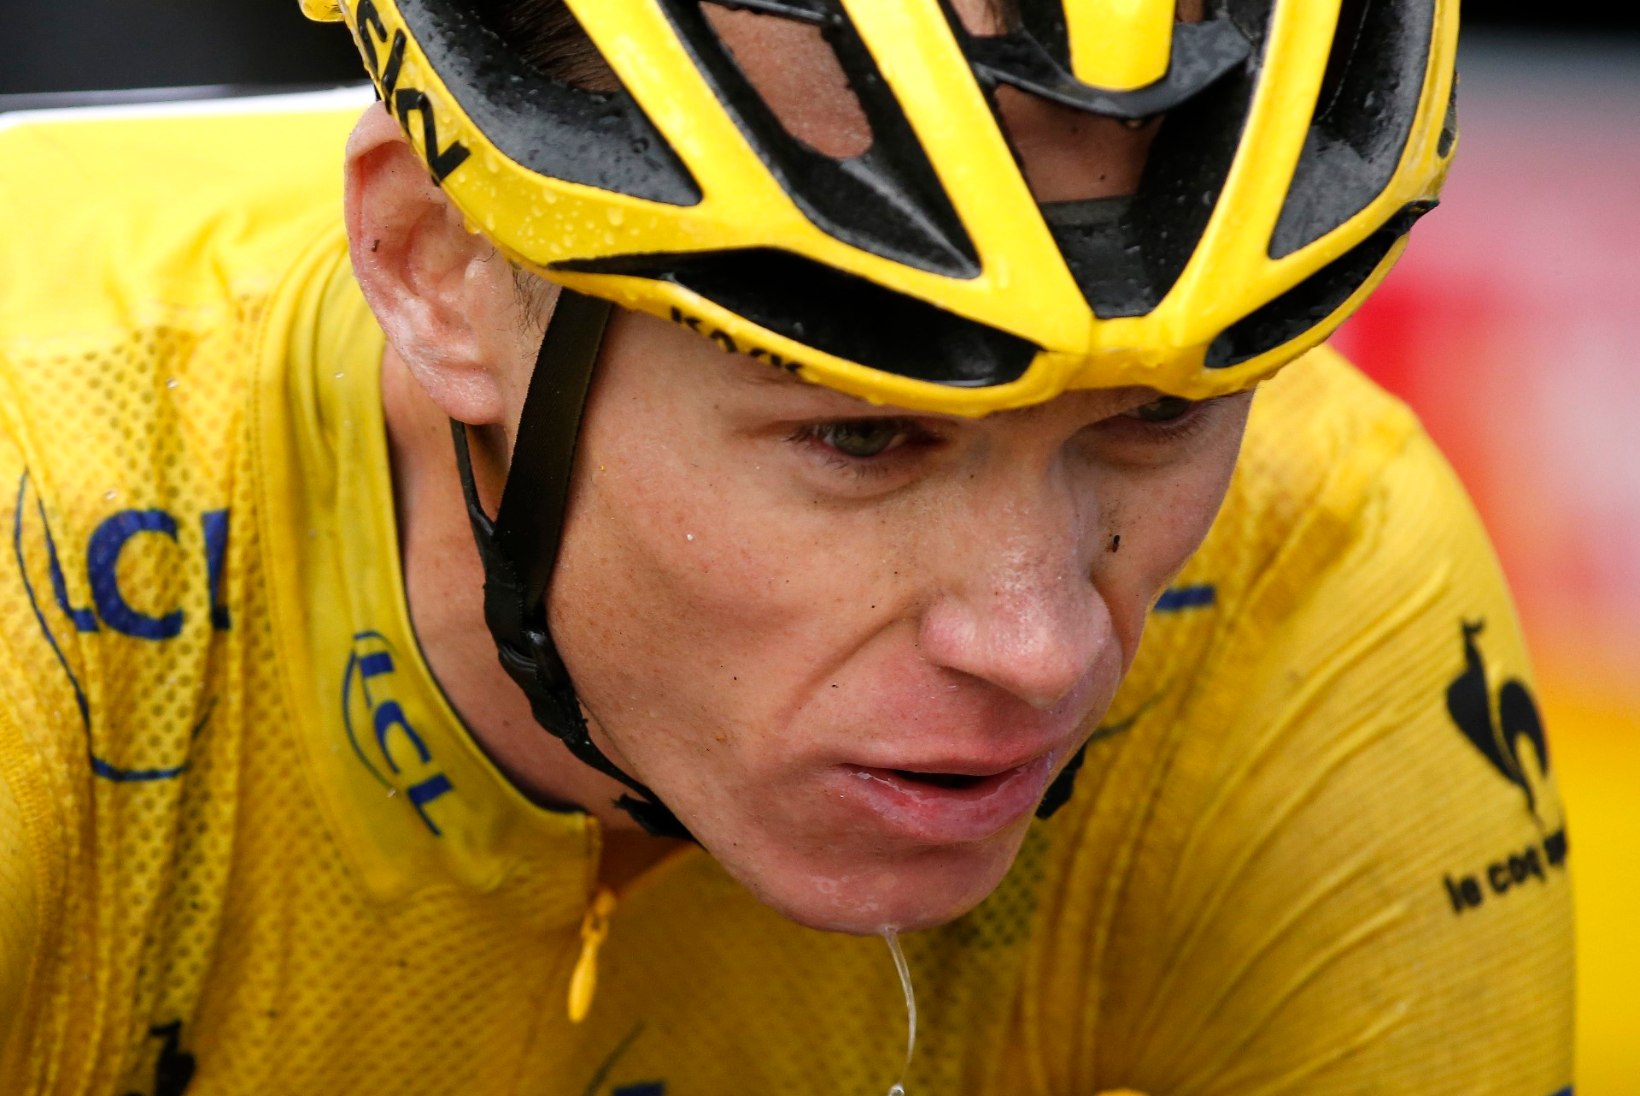 Tour de France'i üldliider Chris Froome: mulle visati uriinitops näkku